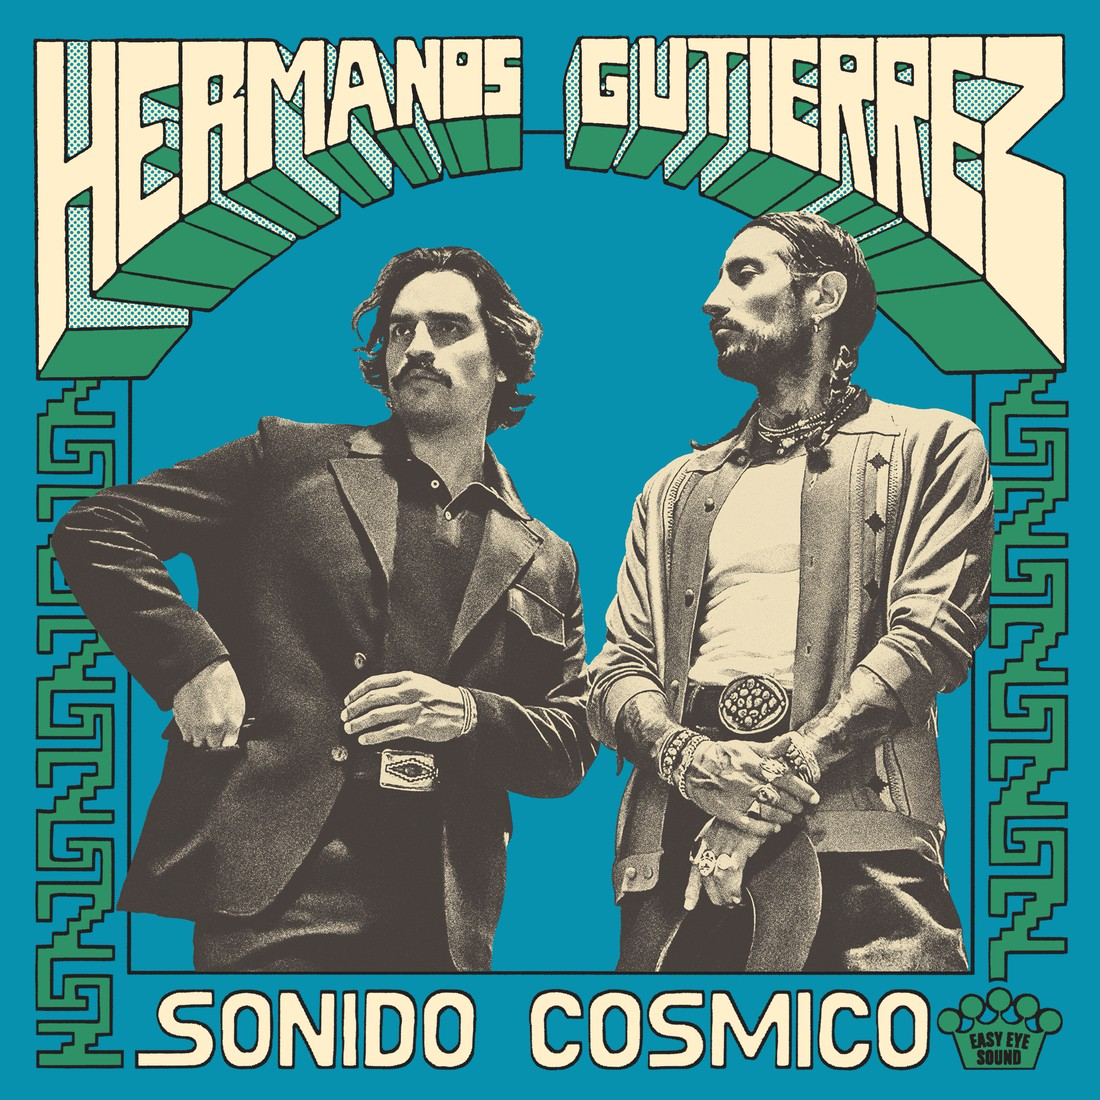 Hermanos Gutiérrez - Sonido Cósmico: Limited Pink Vinyl LP